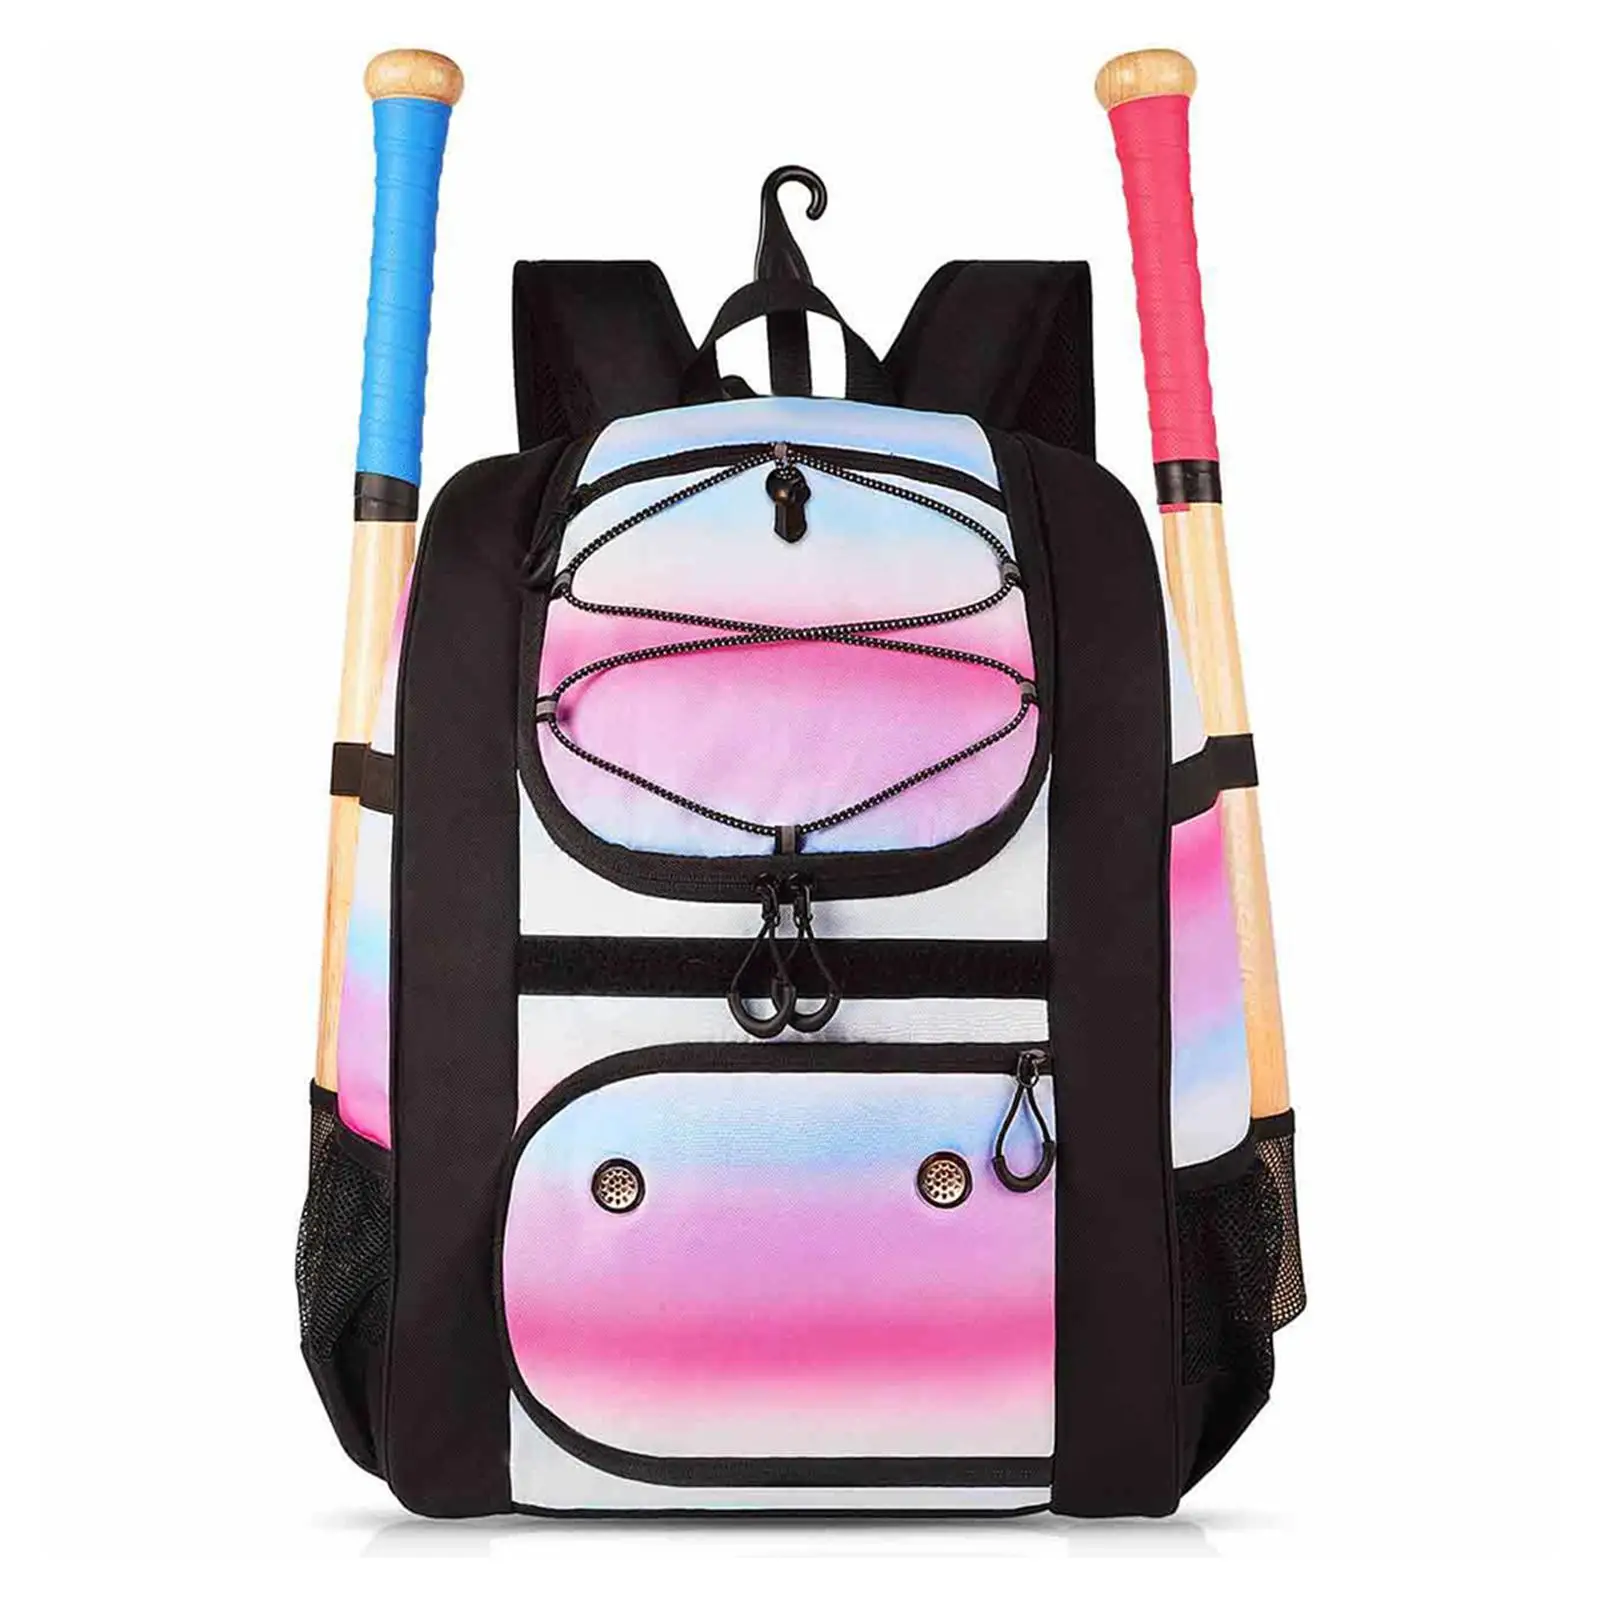 Outdoor Backpack Baseball Storage Rucksack Adjustable Belt Camping Knapsack